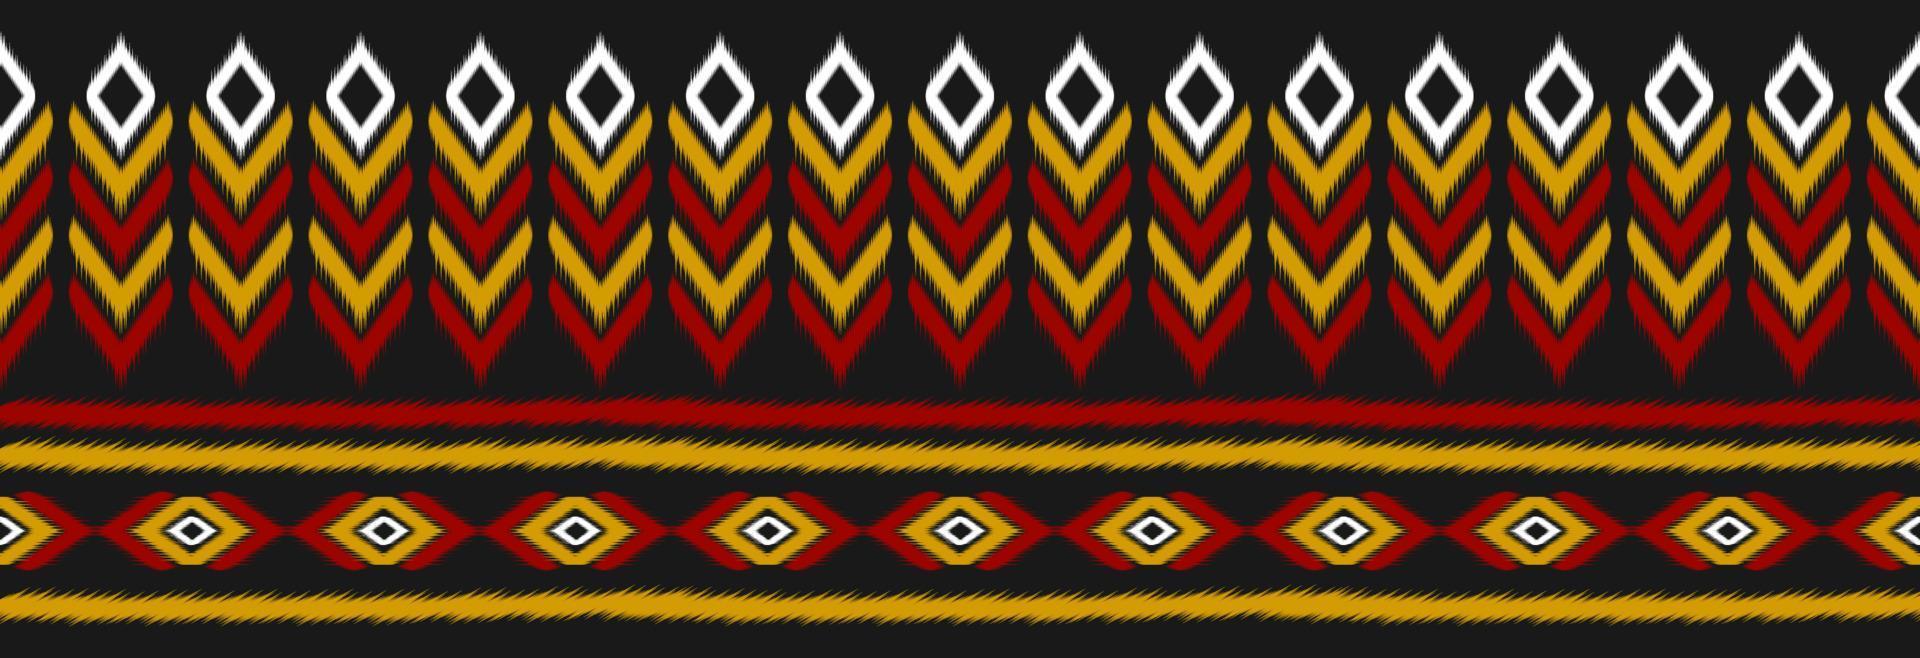 arte de patrón de ikat étnico fronterizo. bordado folklórico, y estilo mexicano. estampado de adornos geométricos aztecas. vector